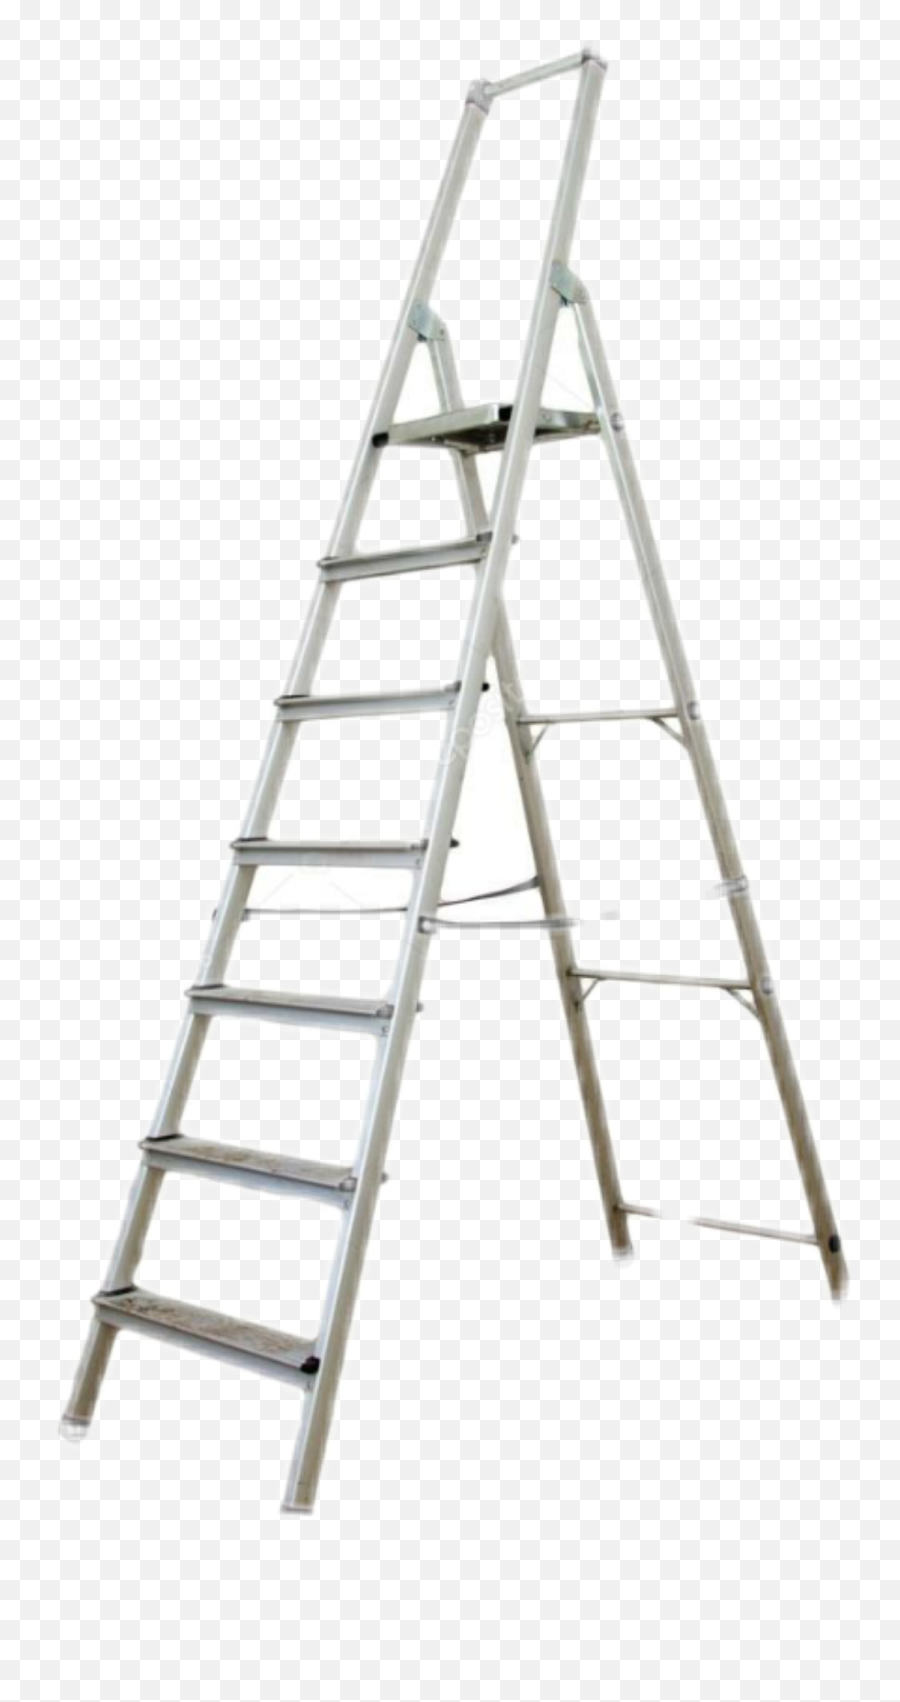 Ladder Sticker - Ladder With White Background Emoji,Ladder Emoji